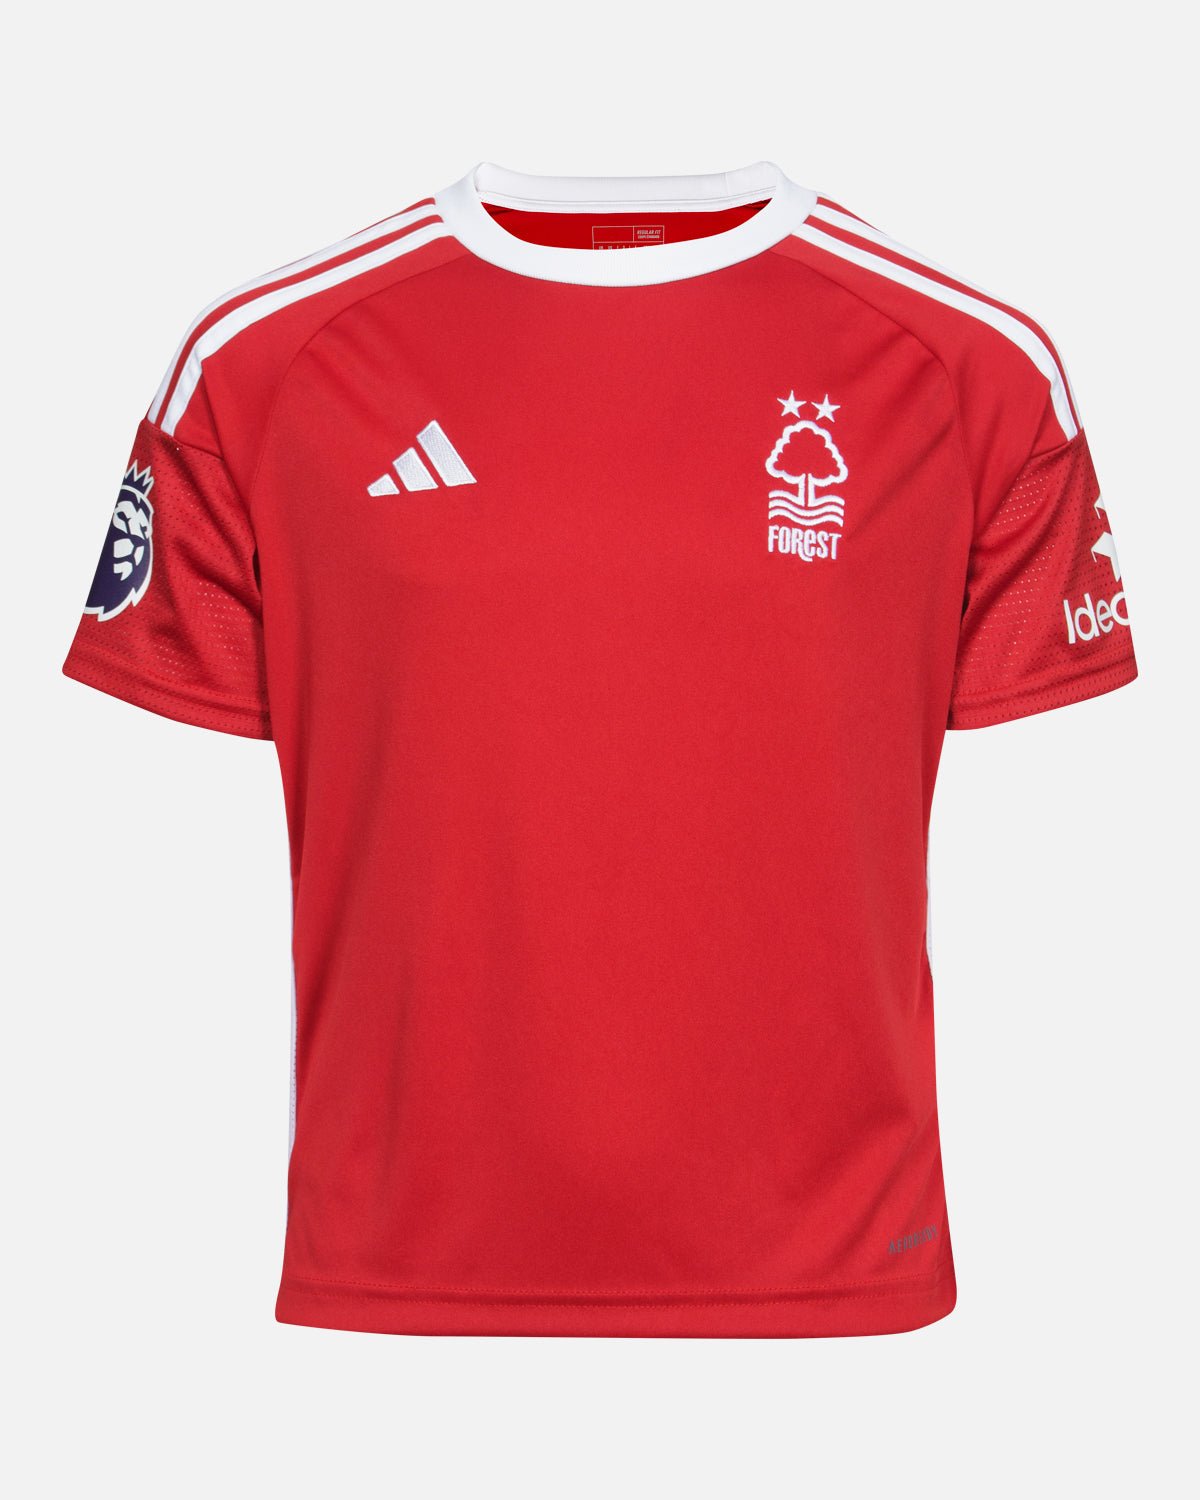 NFFC Junior Home Shirt 23-24 - Origi 27 - Nottingham Forest FC